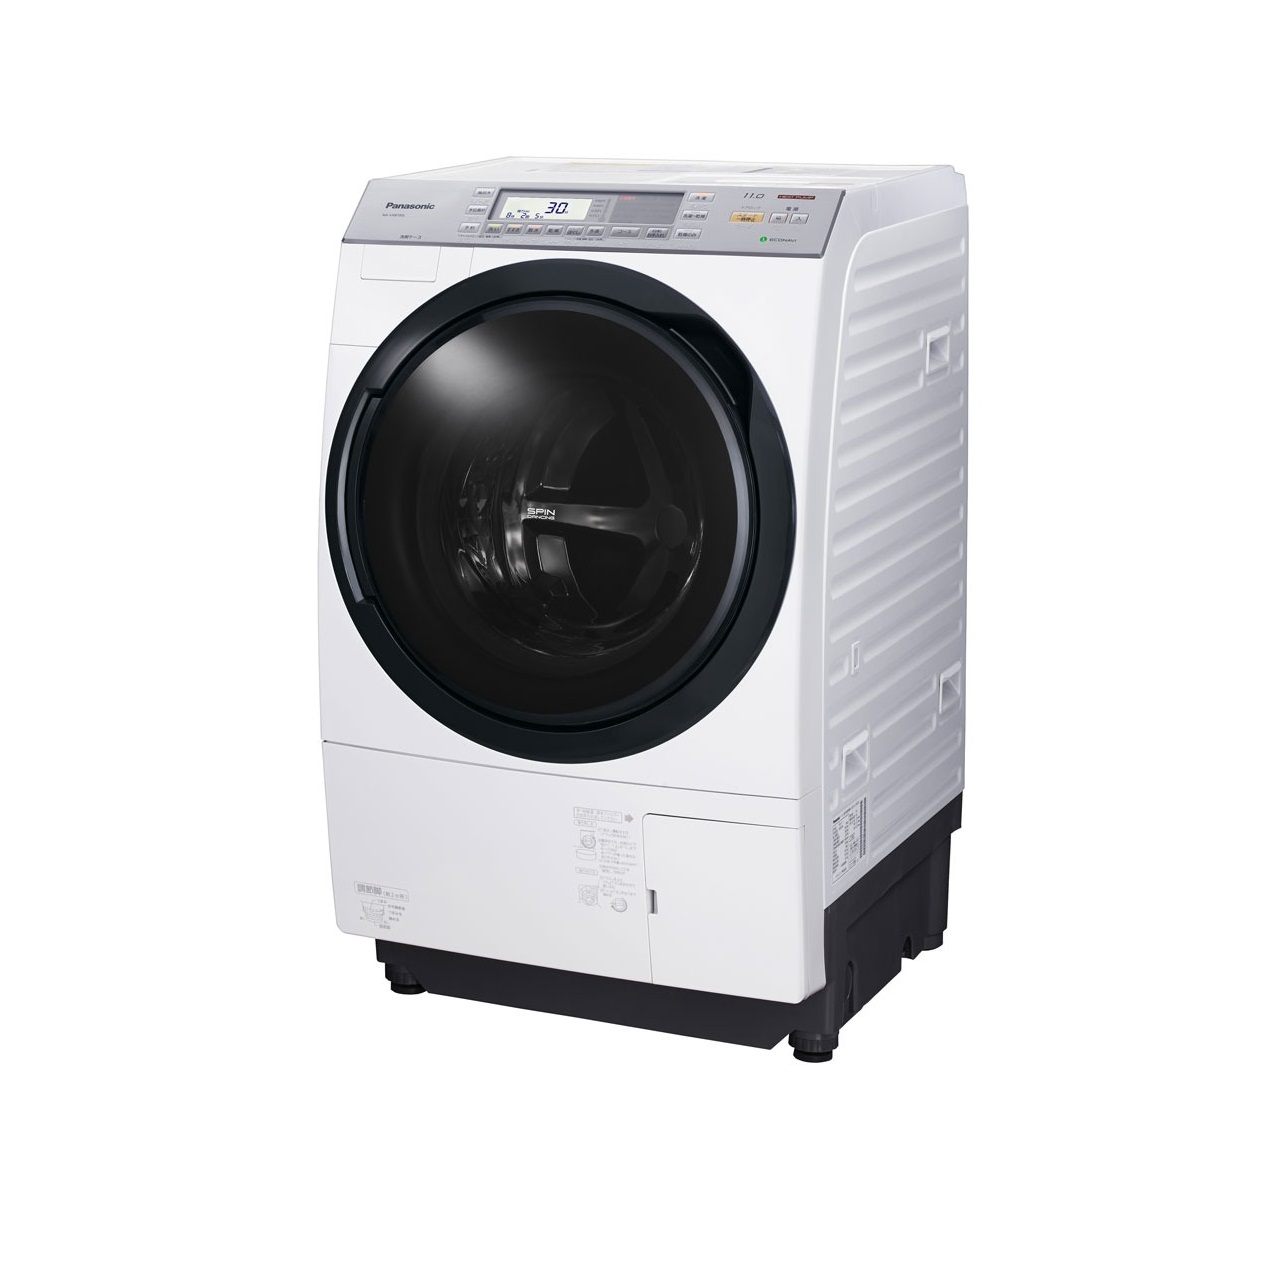 パナソニックNA-VX8700Lななめドラム洗濯乾燥機